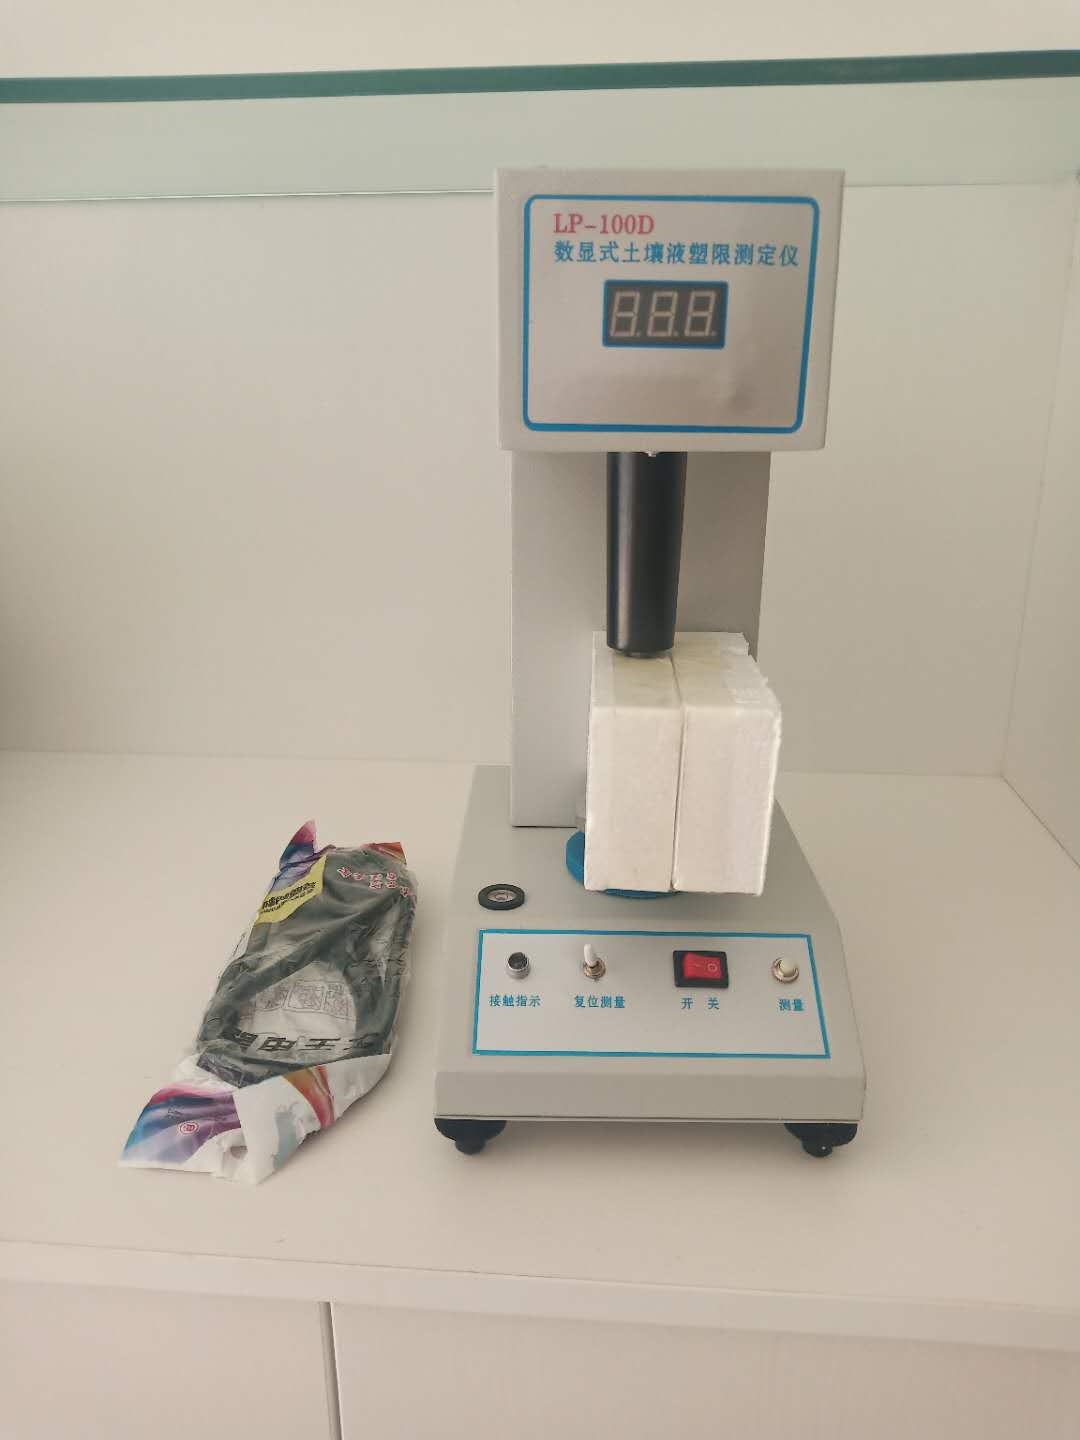 LP-100D数显式土壤液塑限联合测定仪的技术参数及使用方法